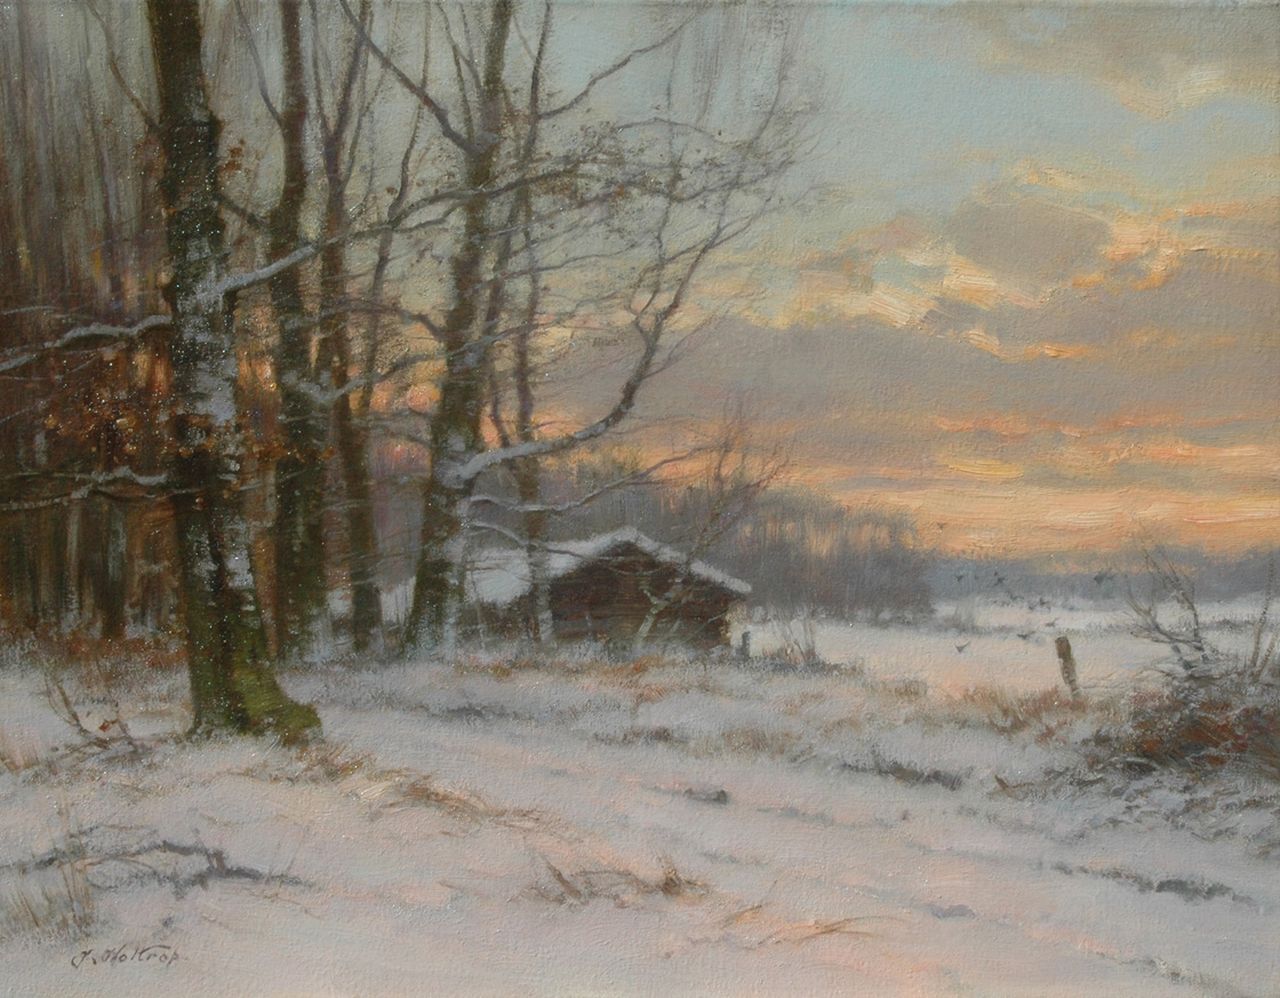 Holtrup J.  | Jan Holtrup, Landscape in winter at dusk, Öl auf Leinwand 35,0 x 45,2 cm, signed l.l.